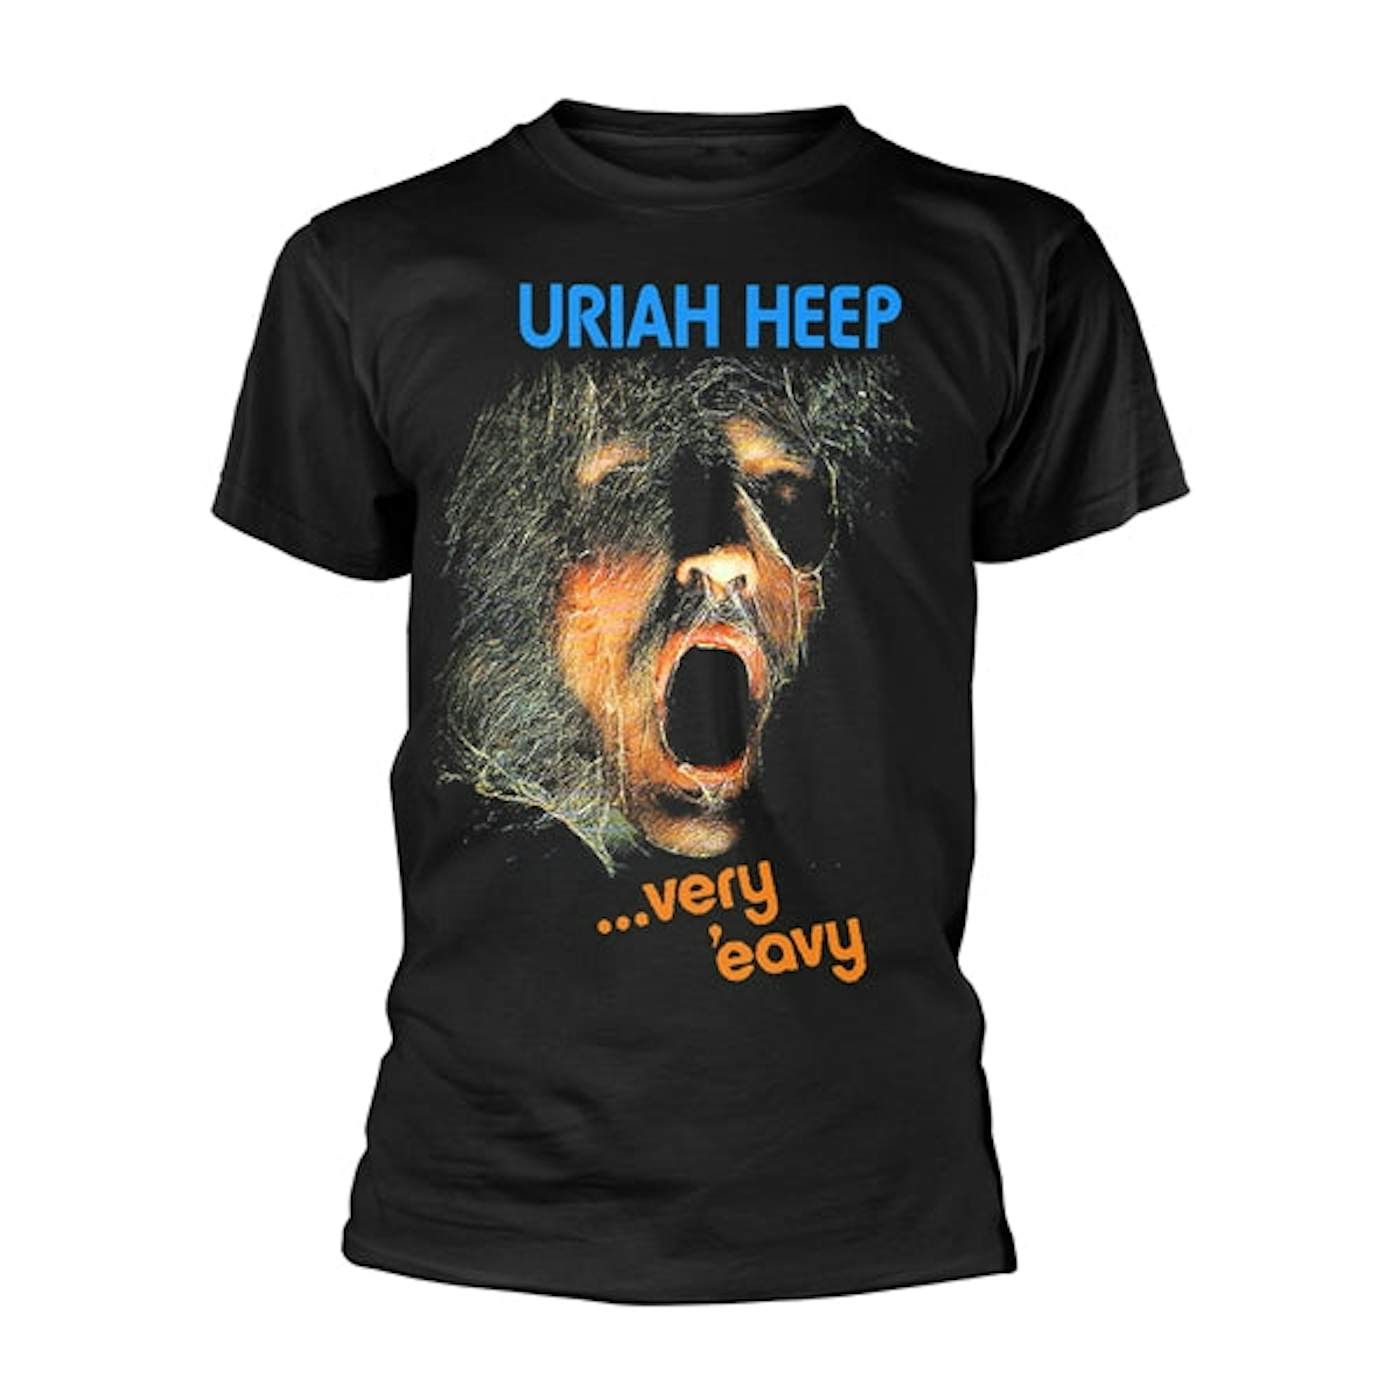 Uriah Heep T-Shirt - Very 'Eavy